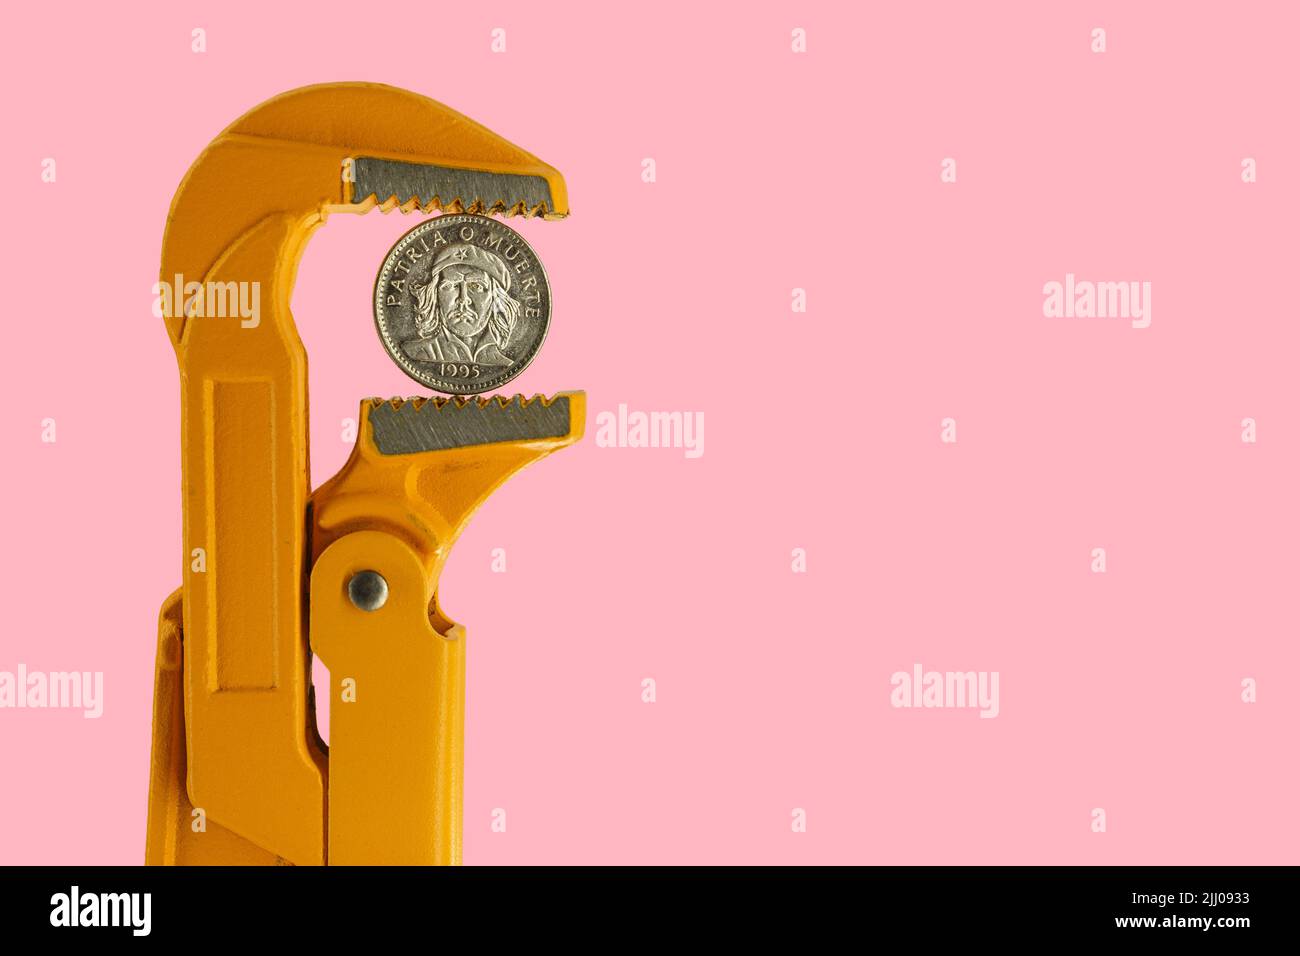 Tre monete cubane di peso tenute in una chiave per idraulico arancione su sfondo rosa Foto Stock